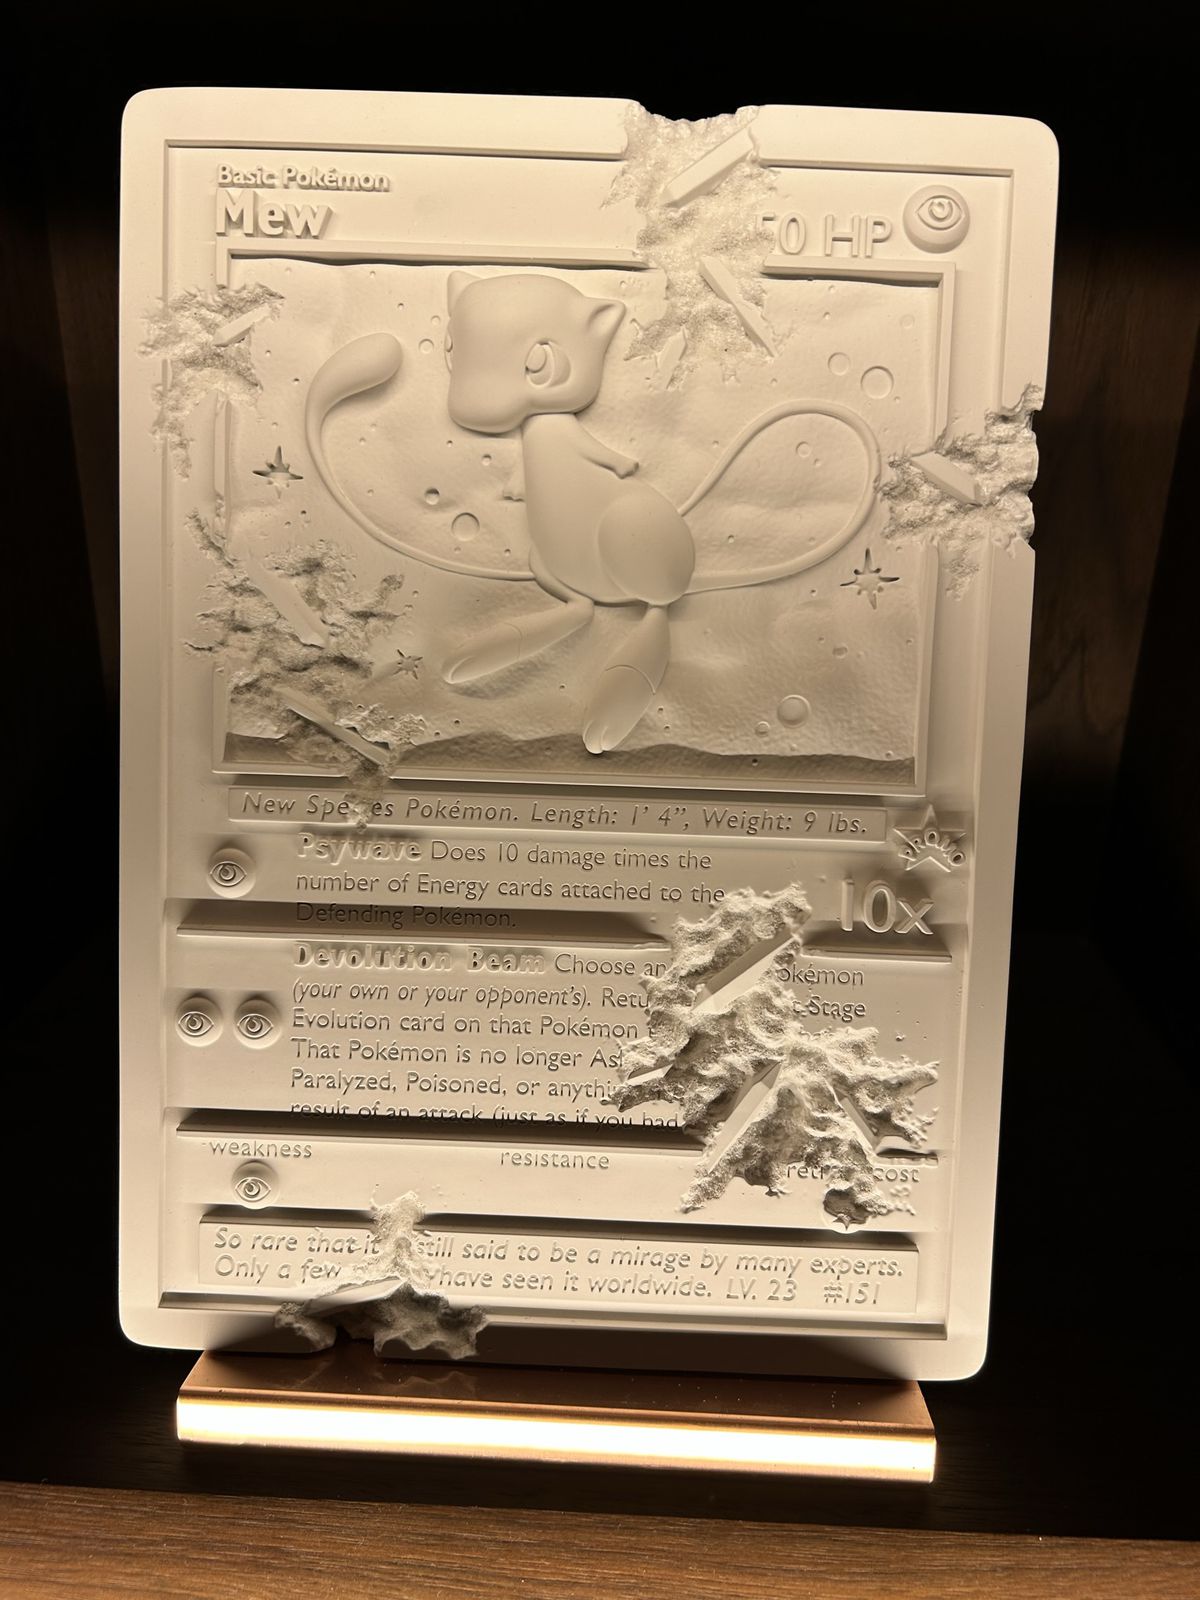 Ett konstverk som visar ett Mew Pokémon-spelkort, som visas på Marufukuro i Kyoto